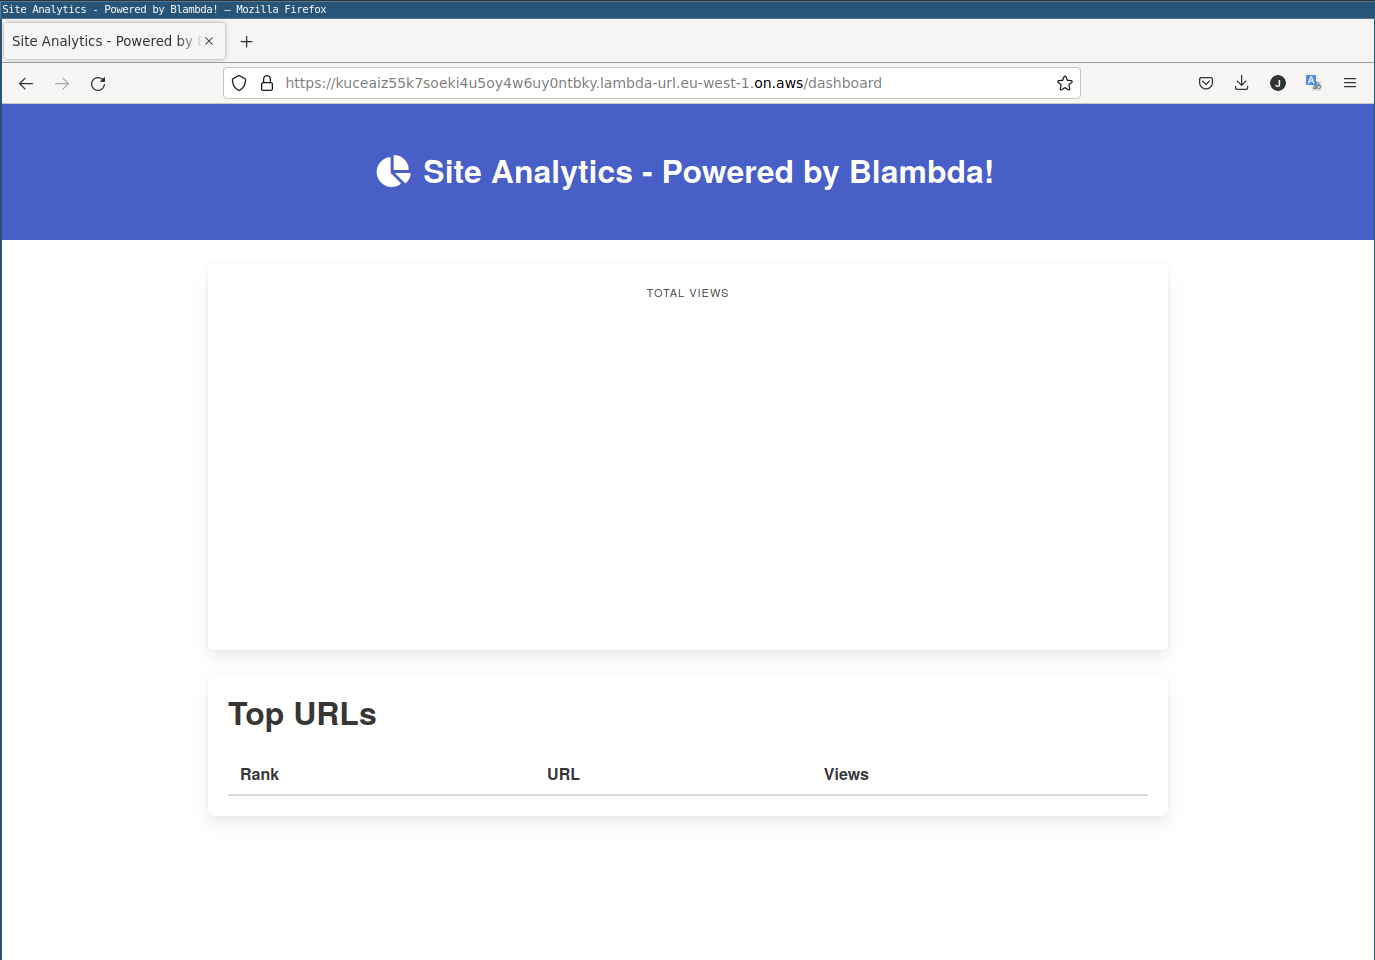 Site analytics dashboard showing no data